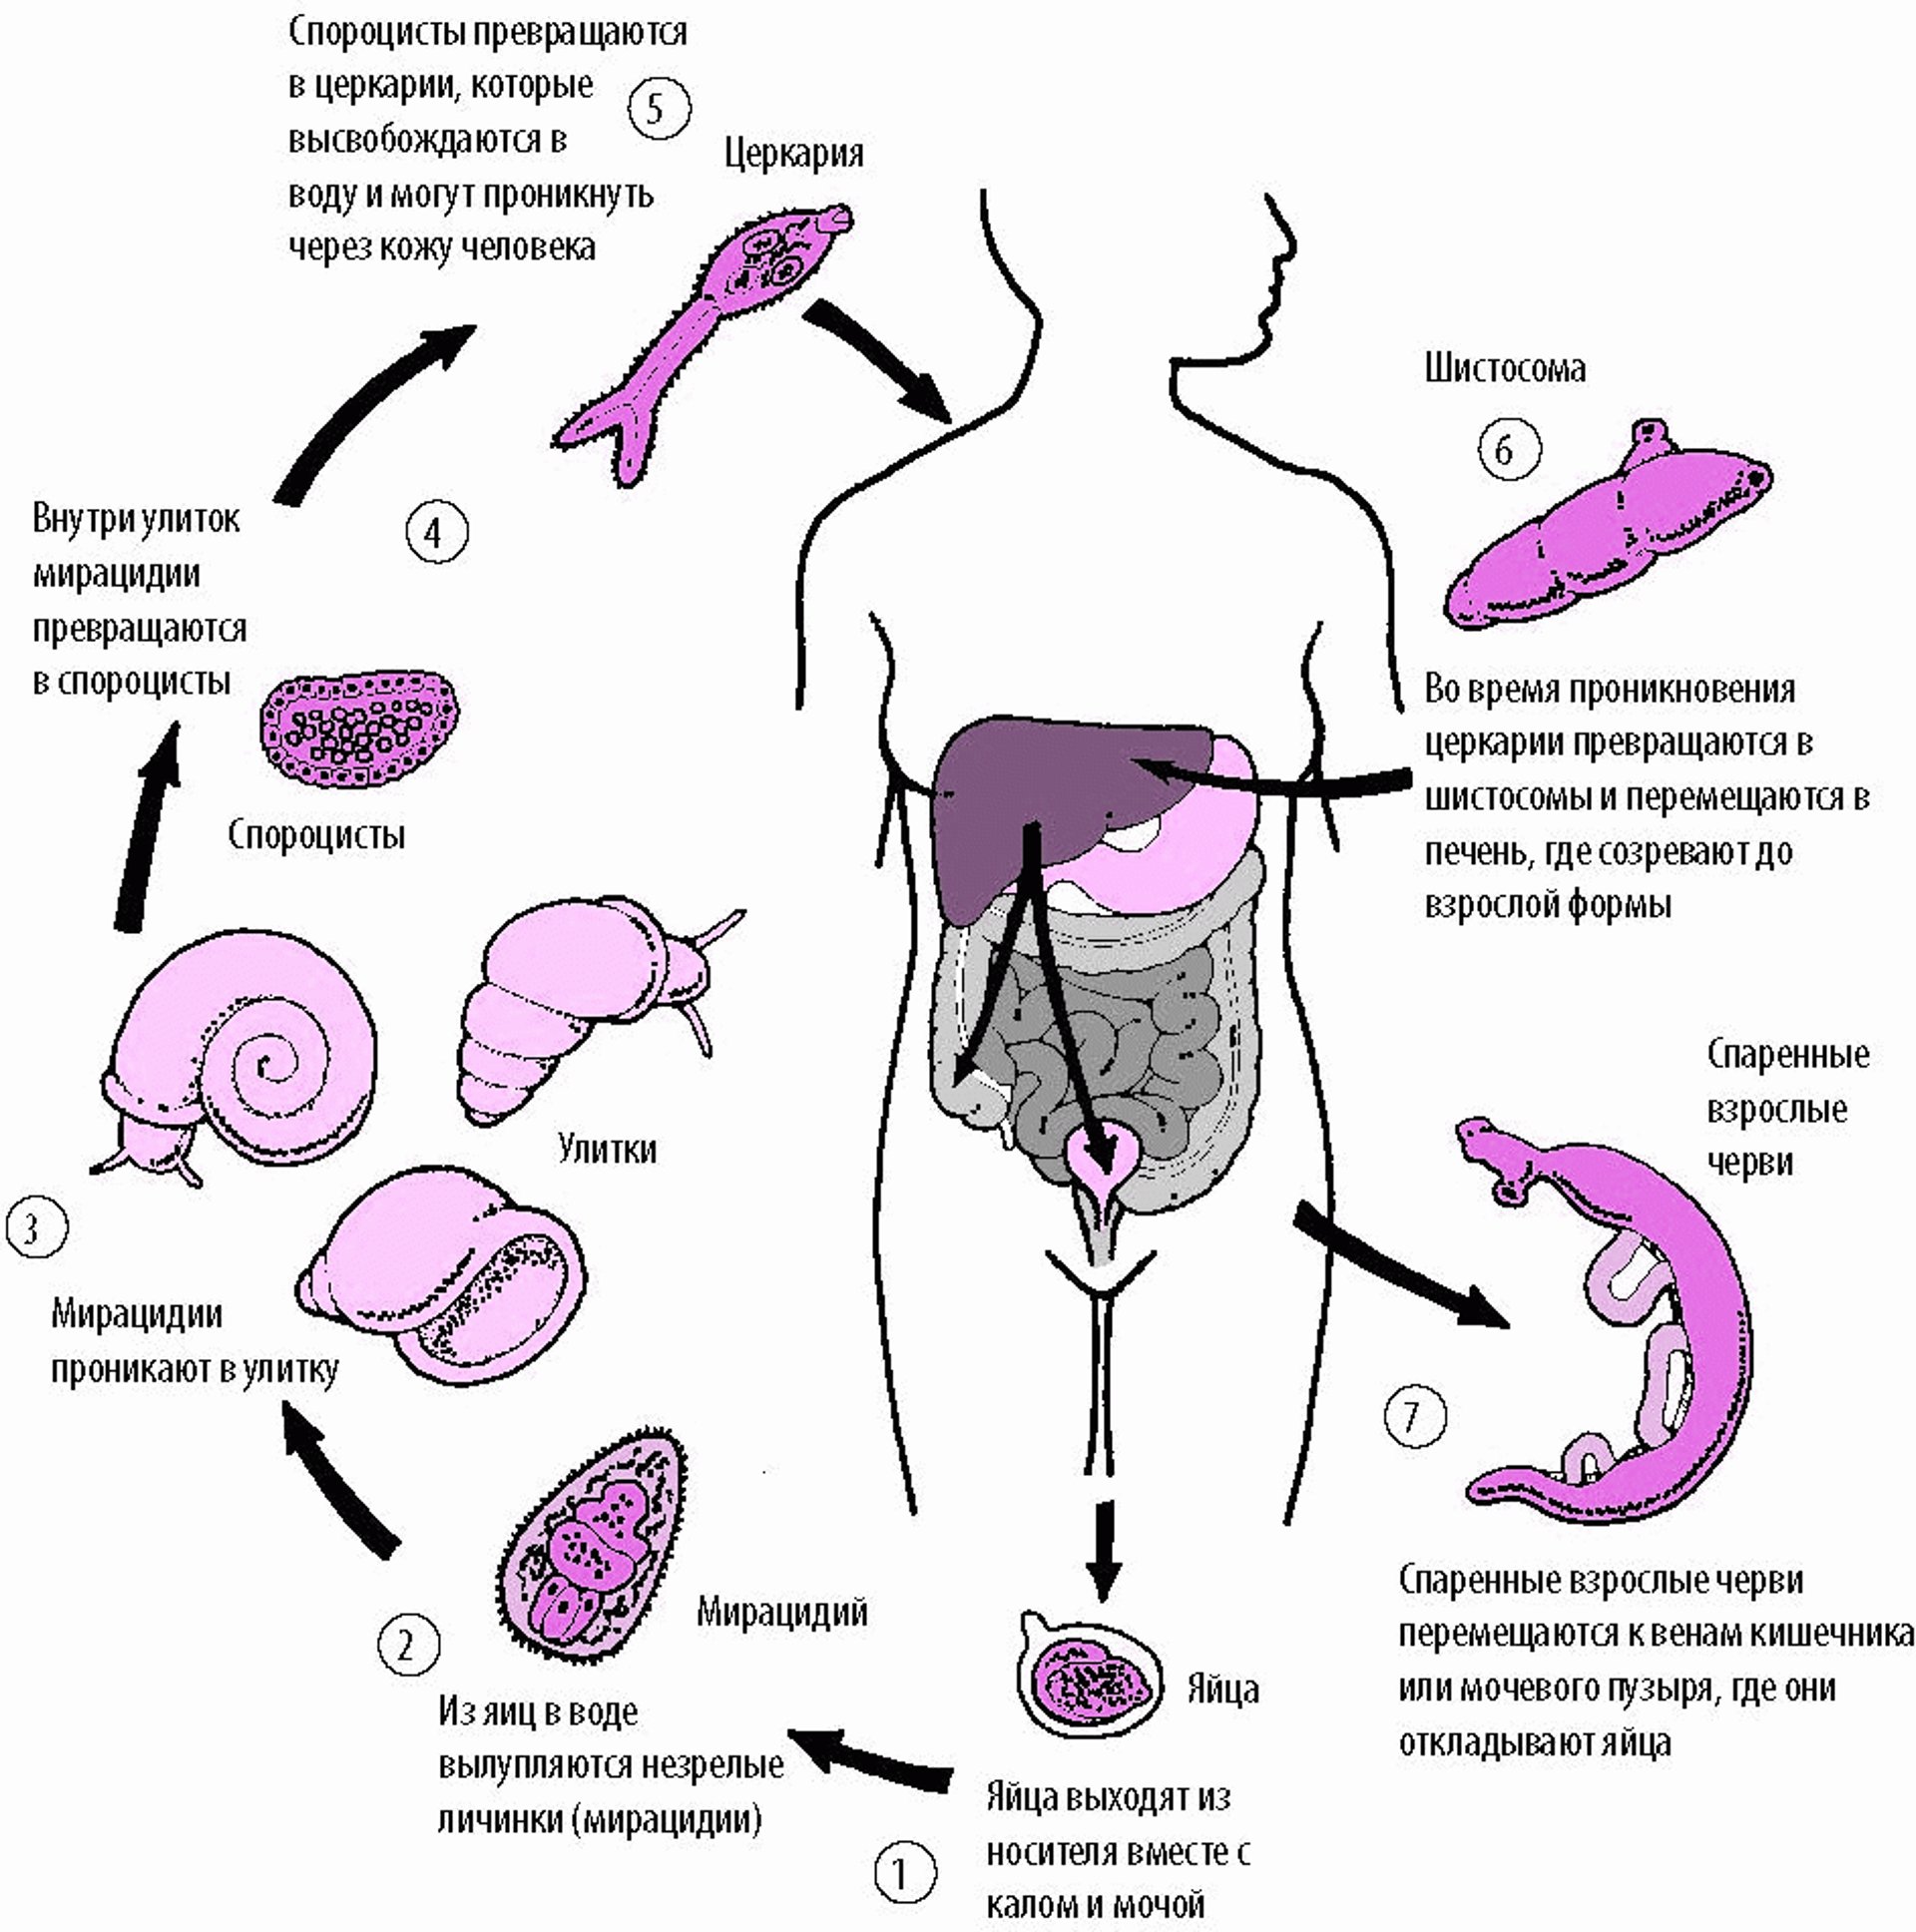 Жизненный цикл Schistosoma